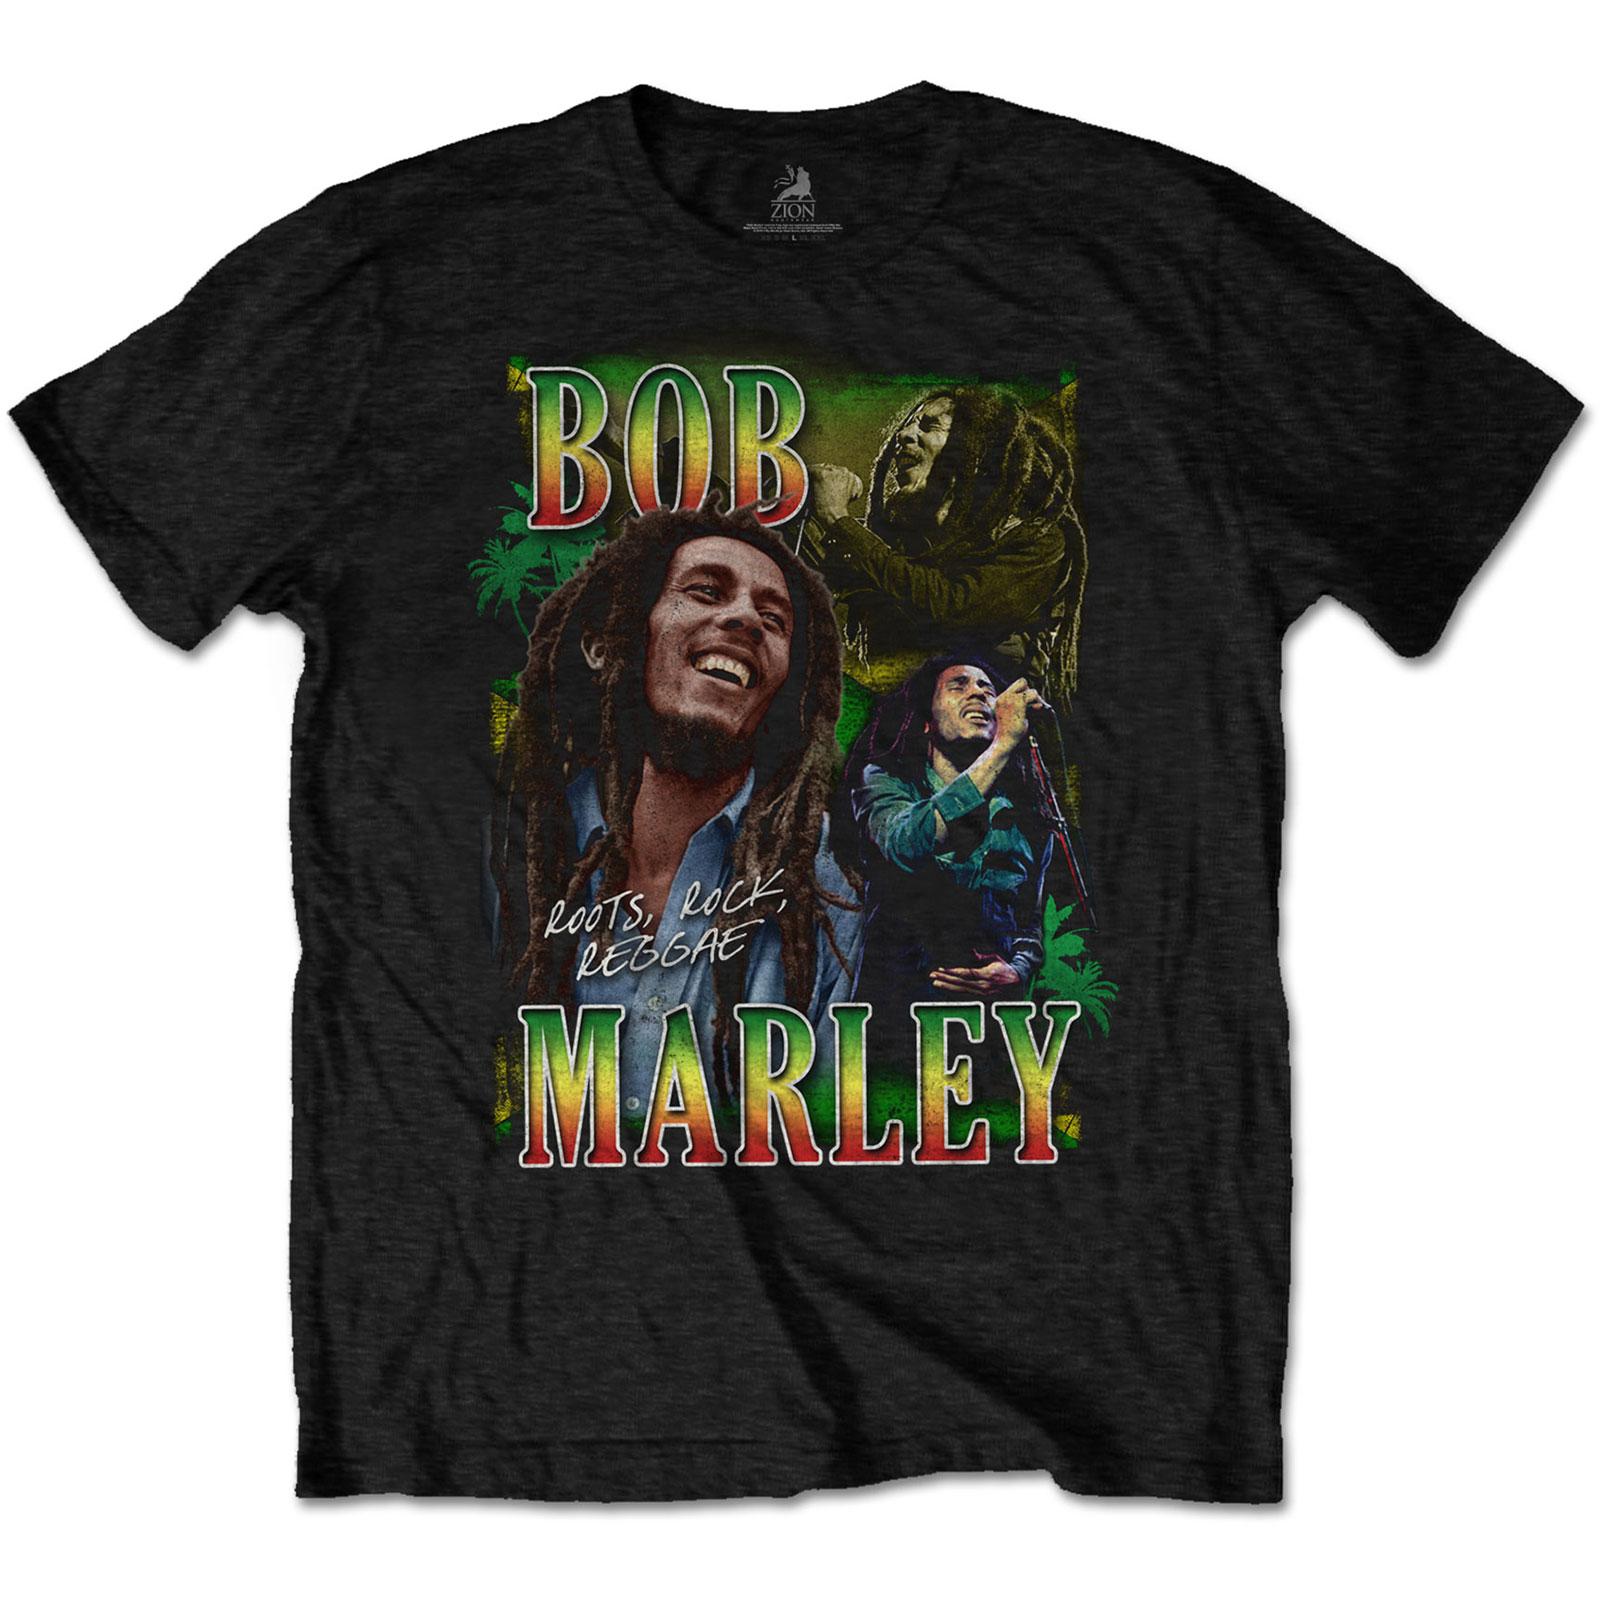 (ボブ マーリー) Bob Marley オフィシャル商品 ユニセックス Roots Rock Reggae Tシャツ オマージュ 半袖 トップス 【海外通販】